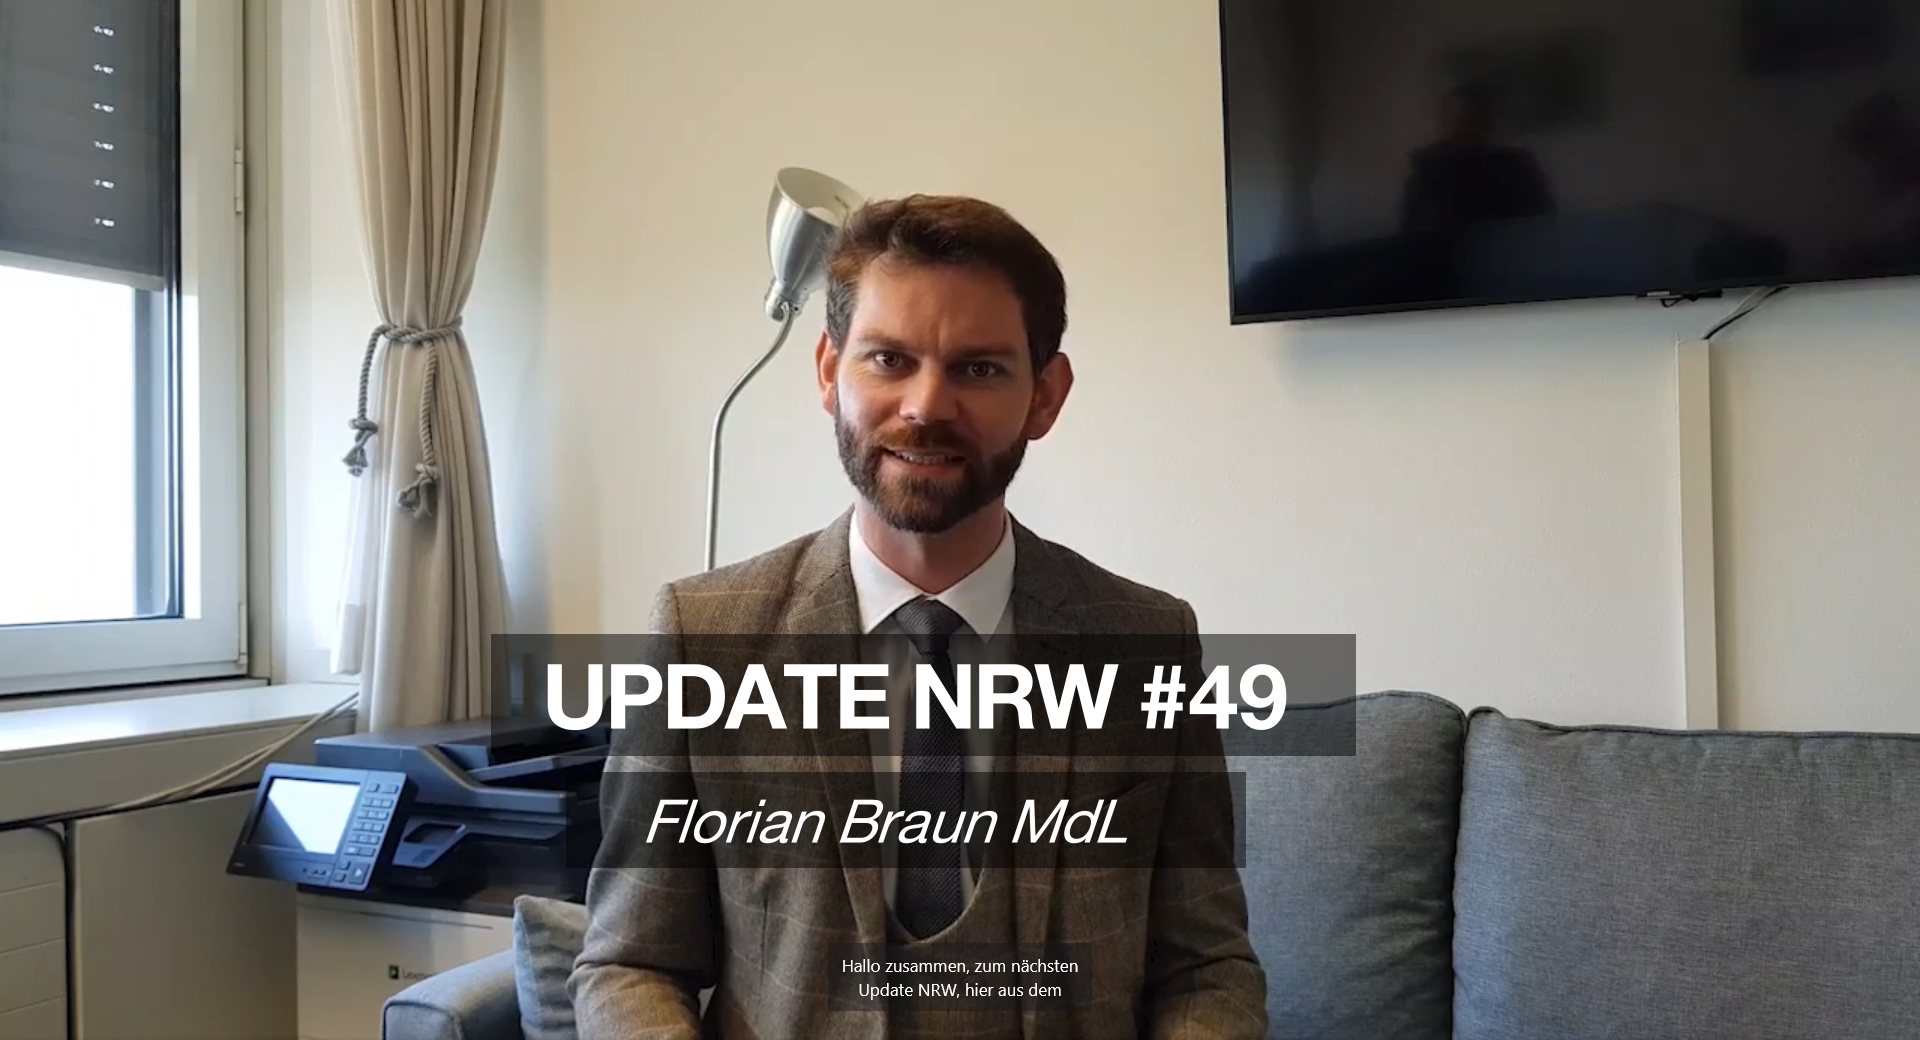 Florian Braun MdL: Update NRW #49